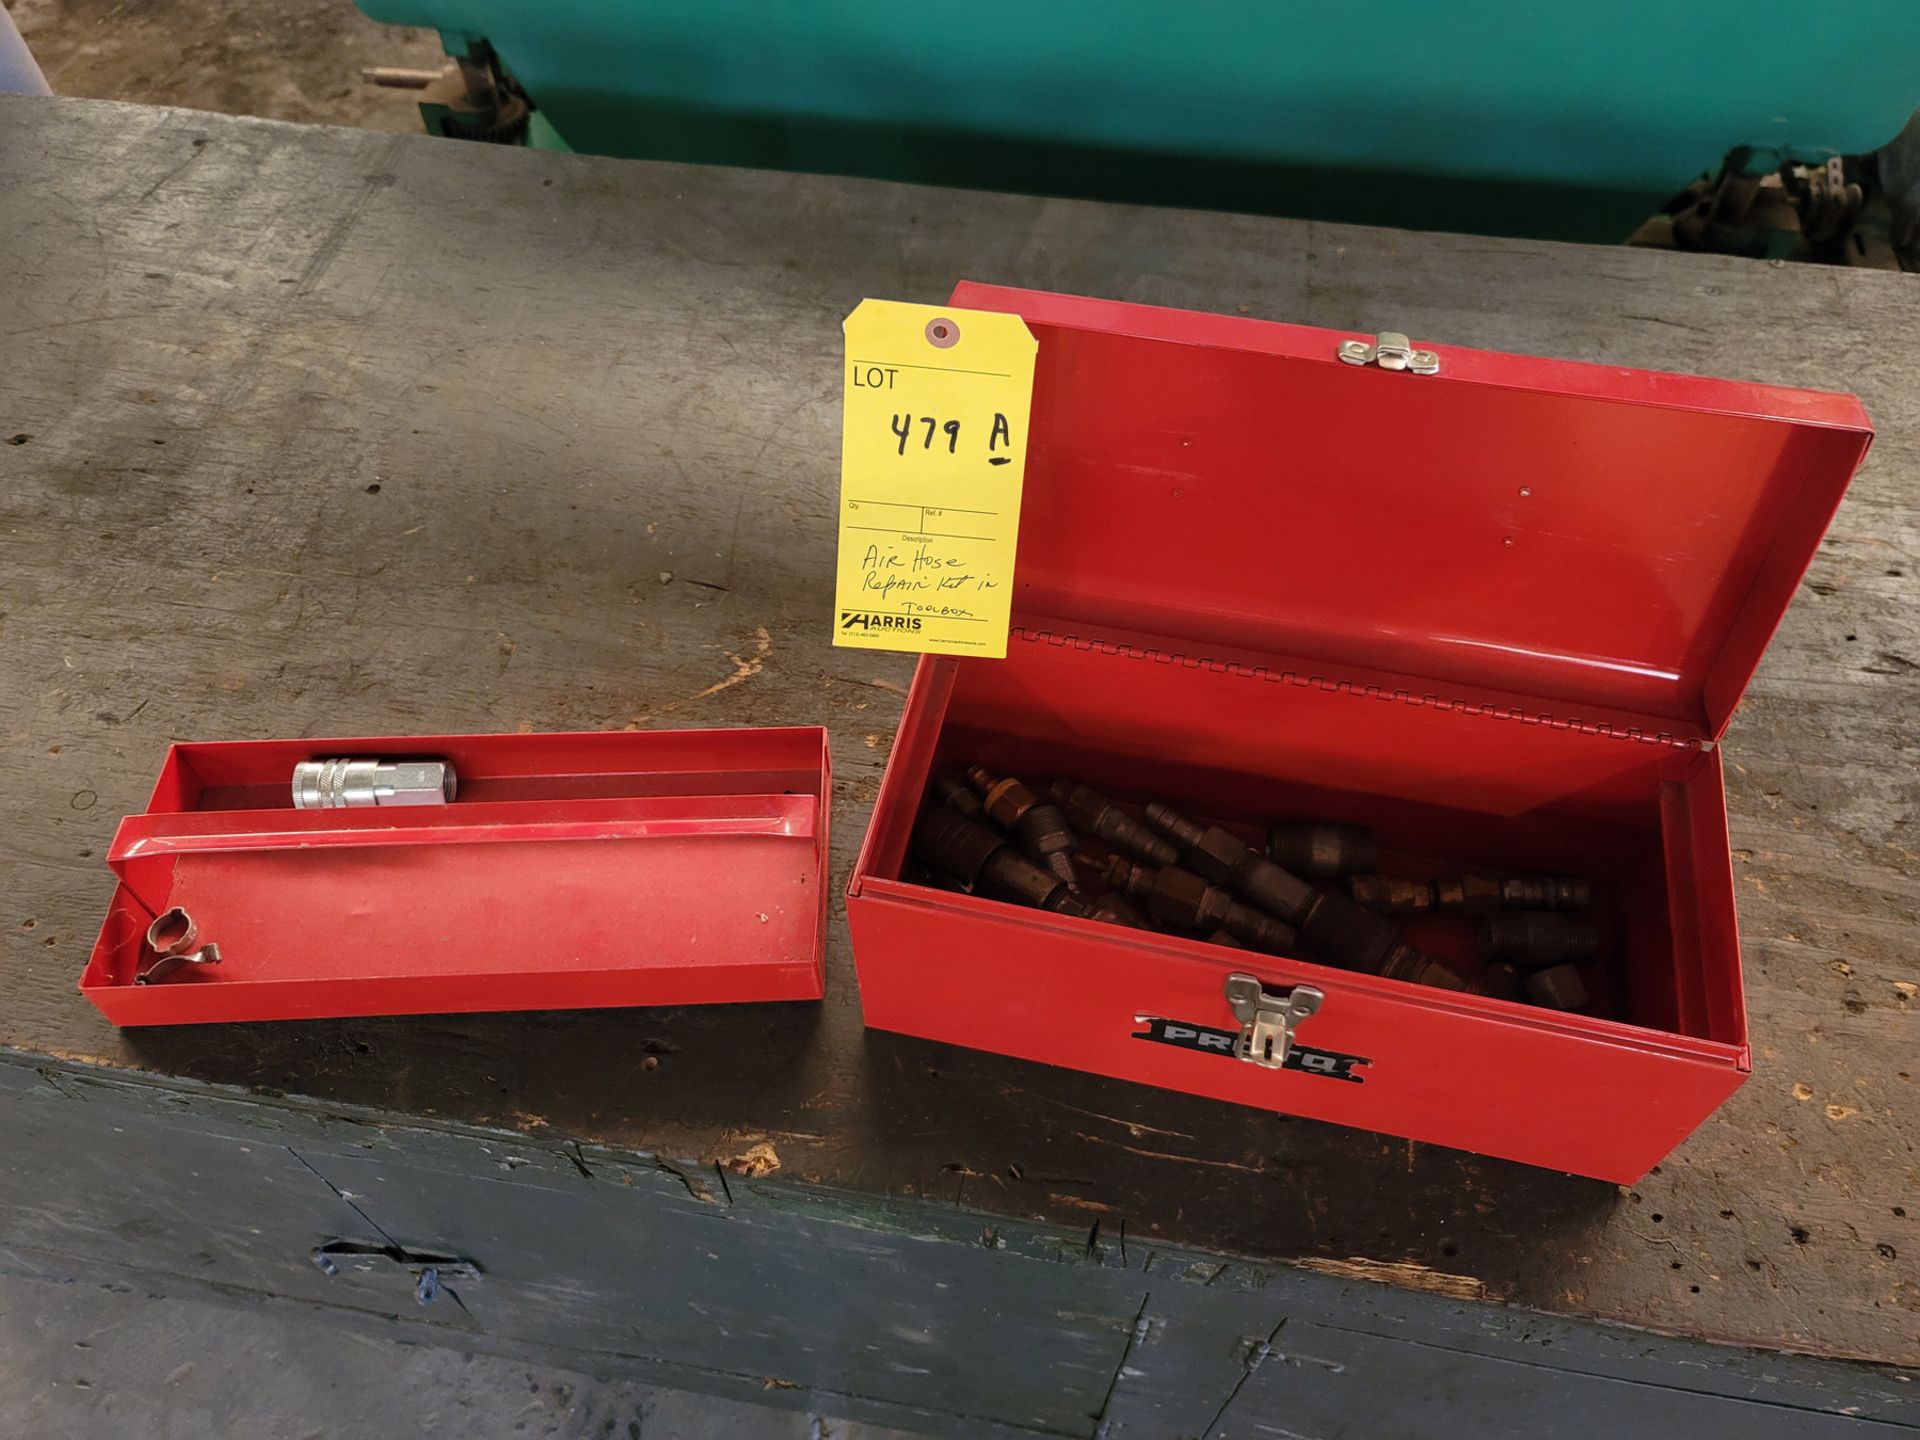 Air Hose Repair Kit in Toolbox